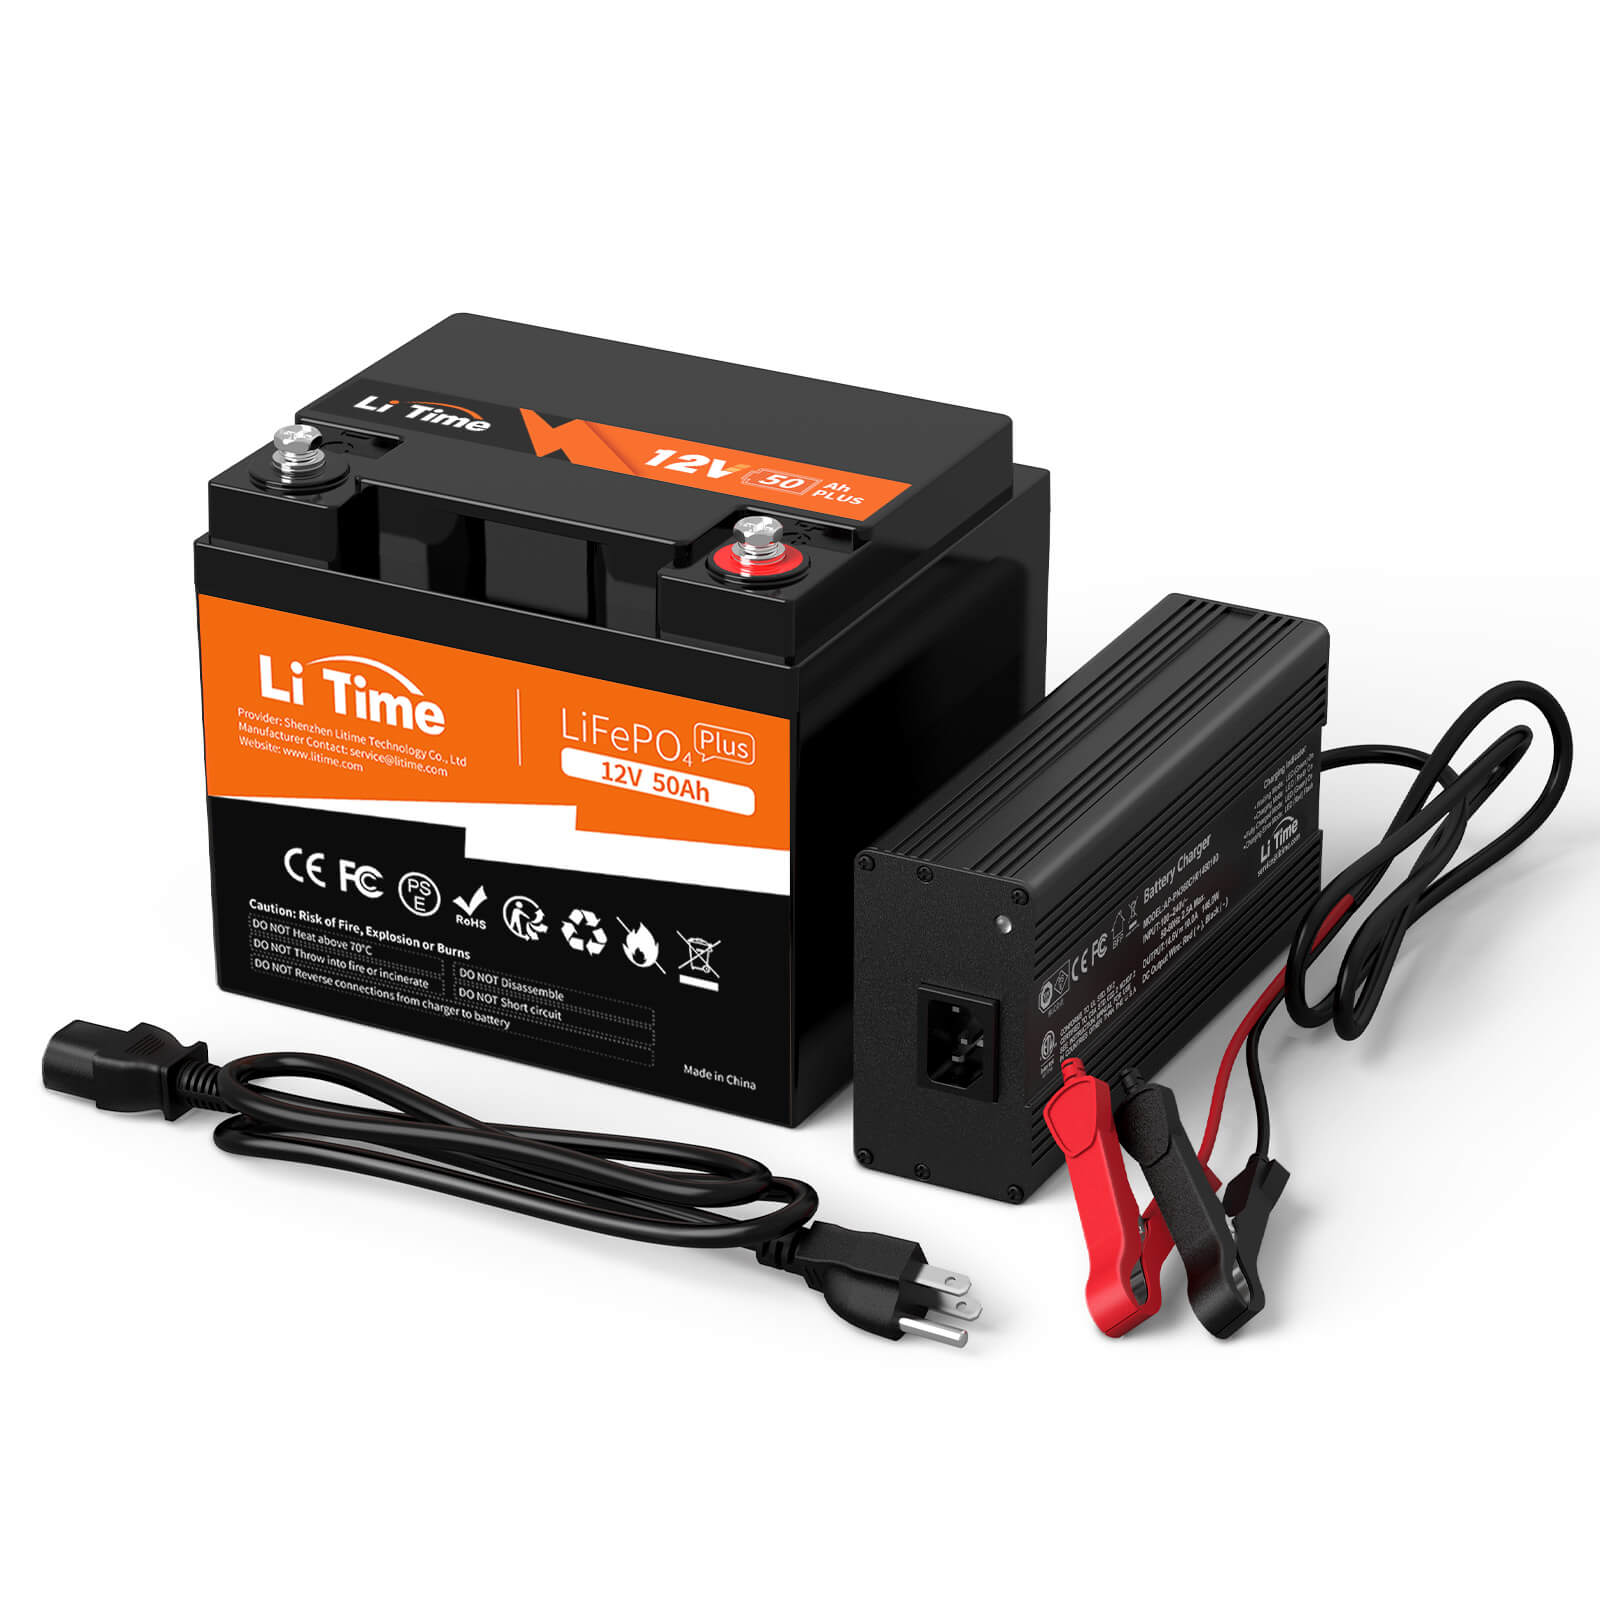 Europas Beste LiFePO4 Batterie– LiTime12V 50Ah Lithium LiFePO4 Batterie